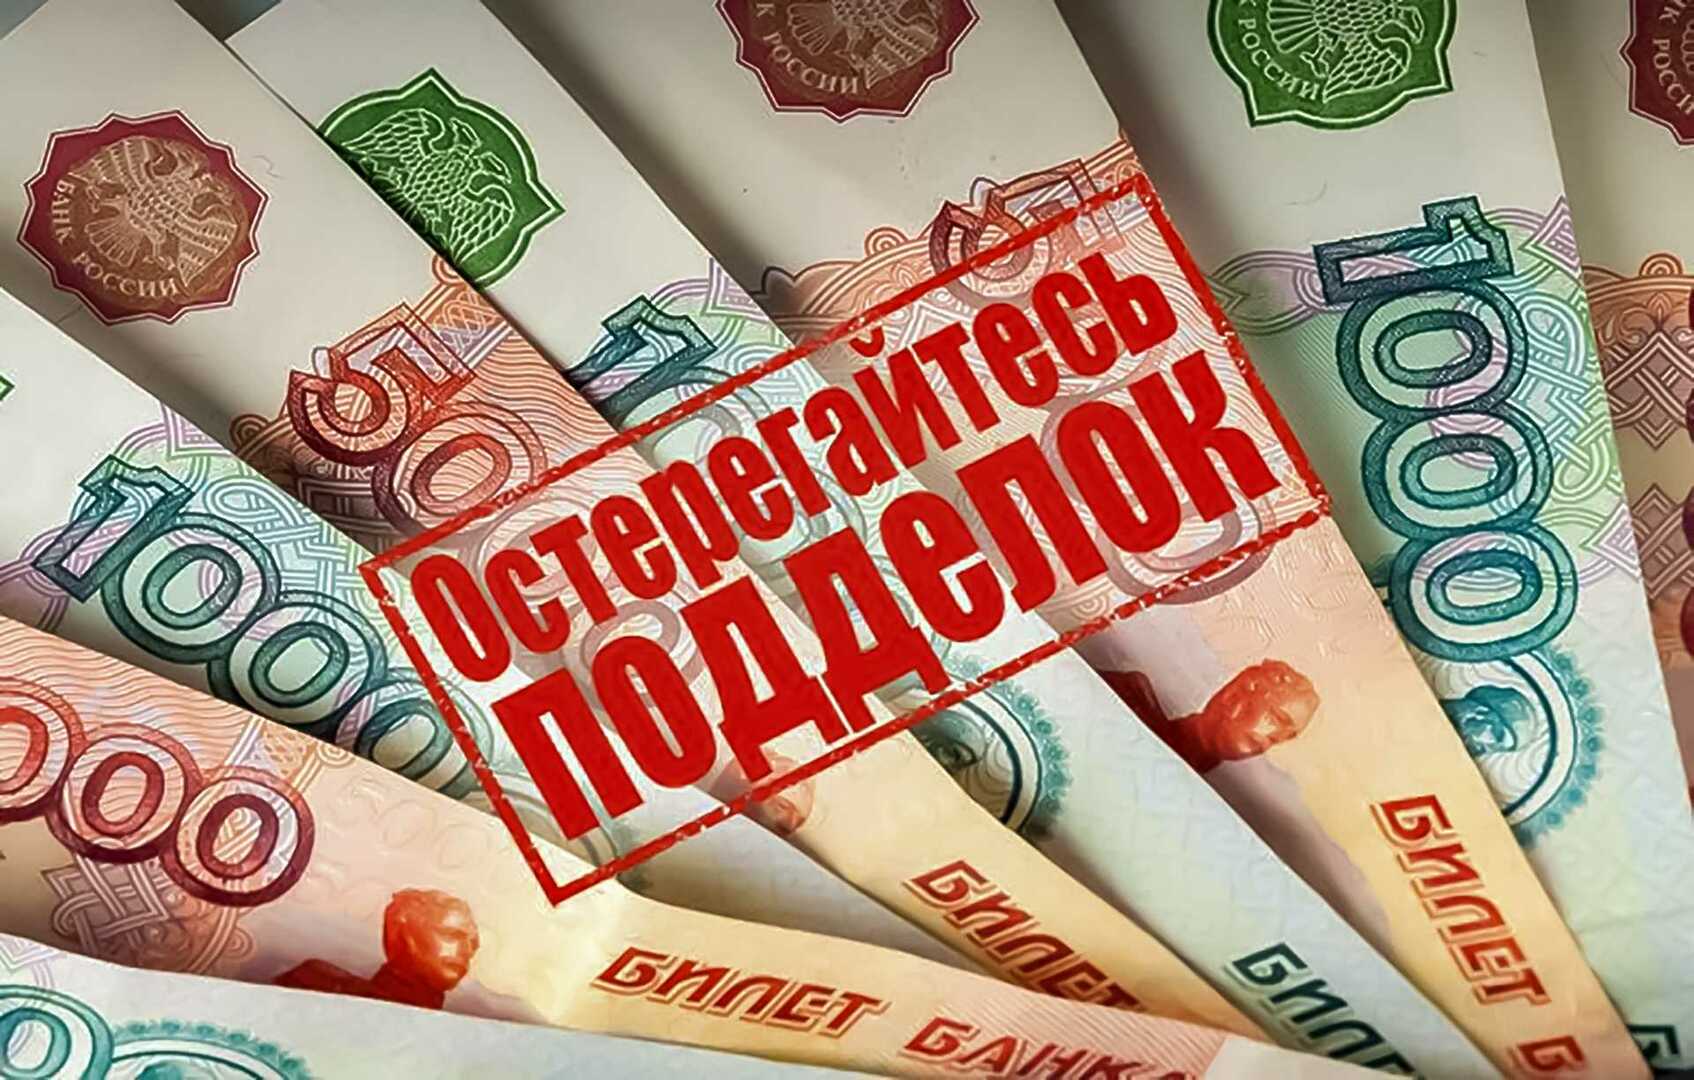 О проводимой Отделением Банка России Белгород работе по профилактике фальшивомонетничества.